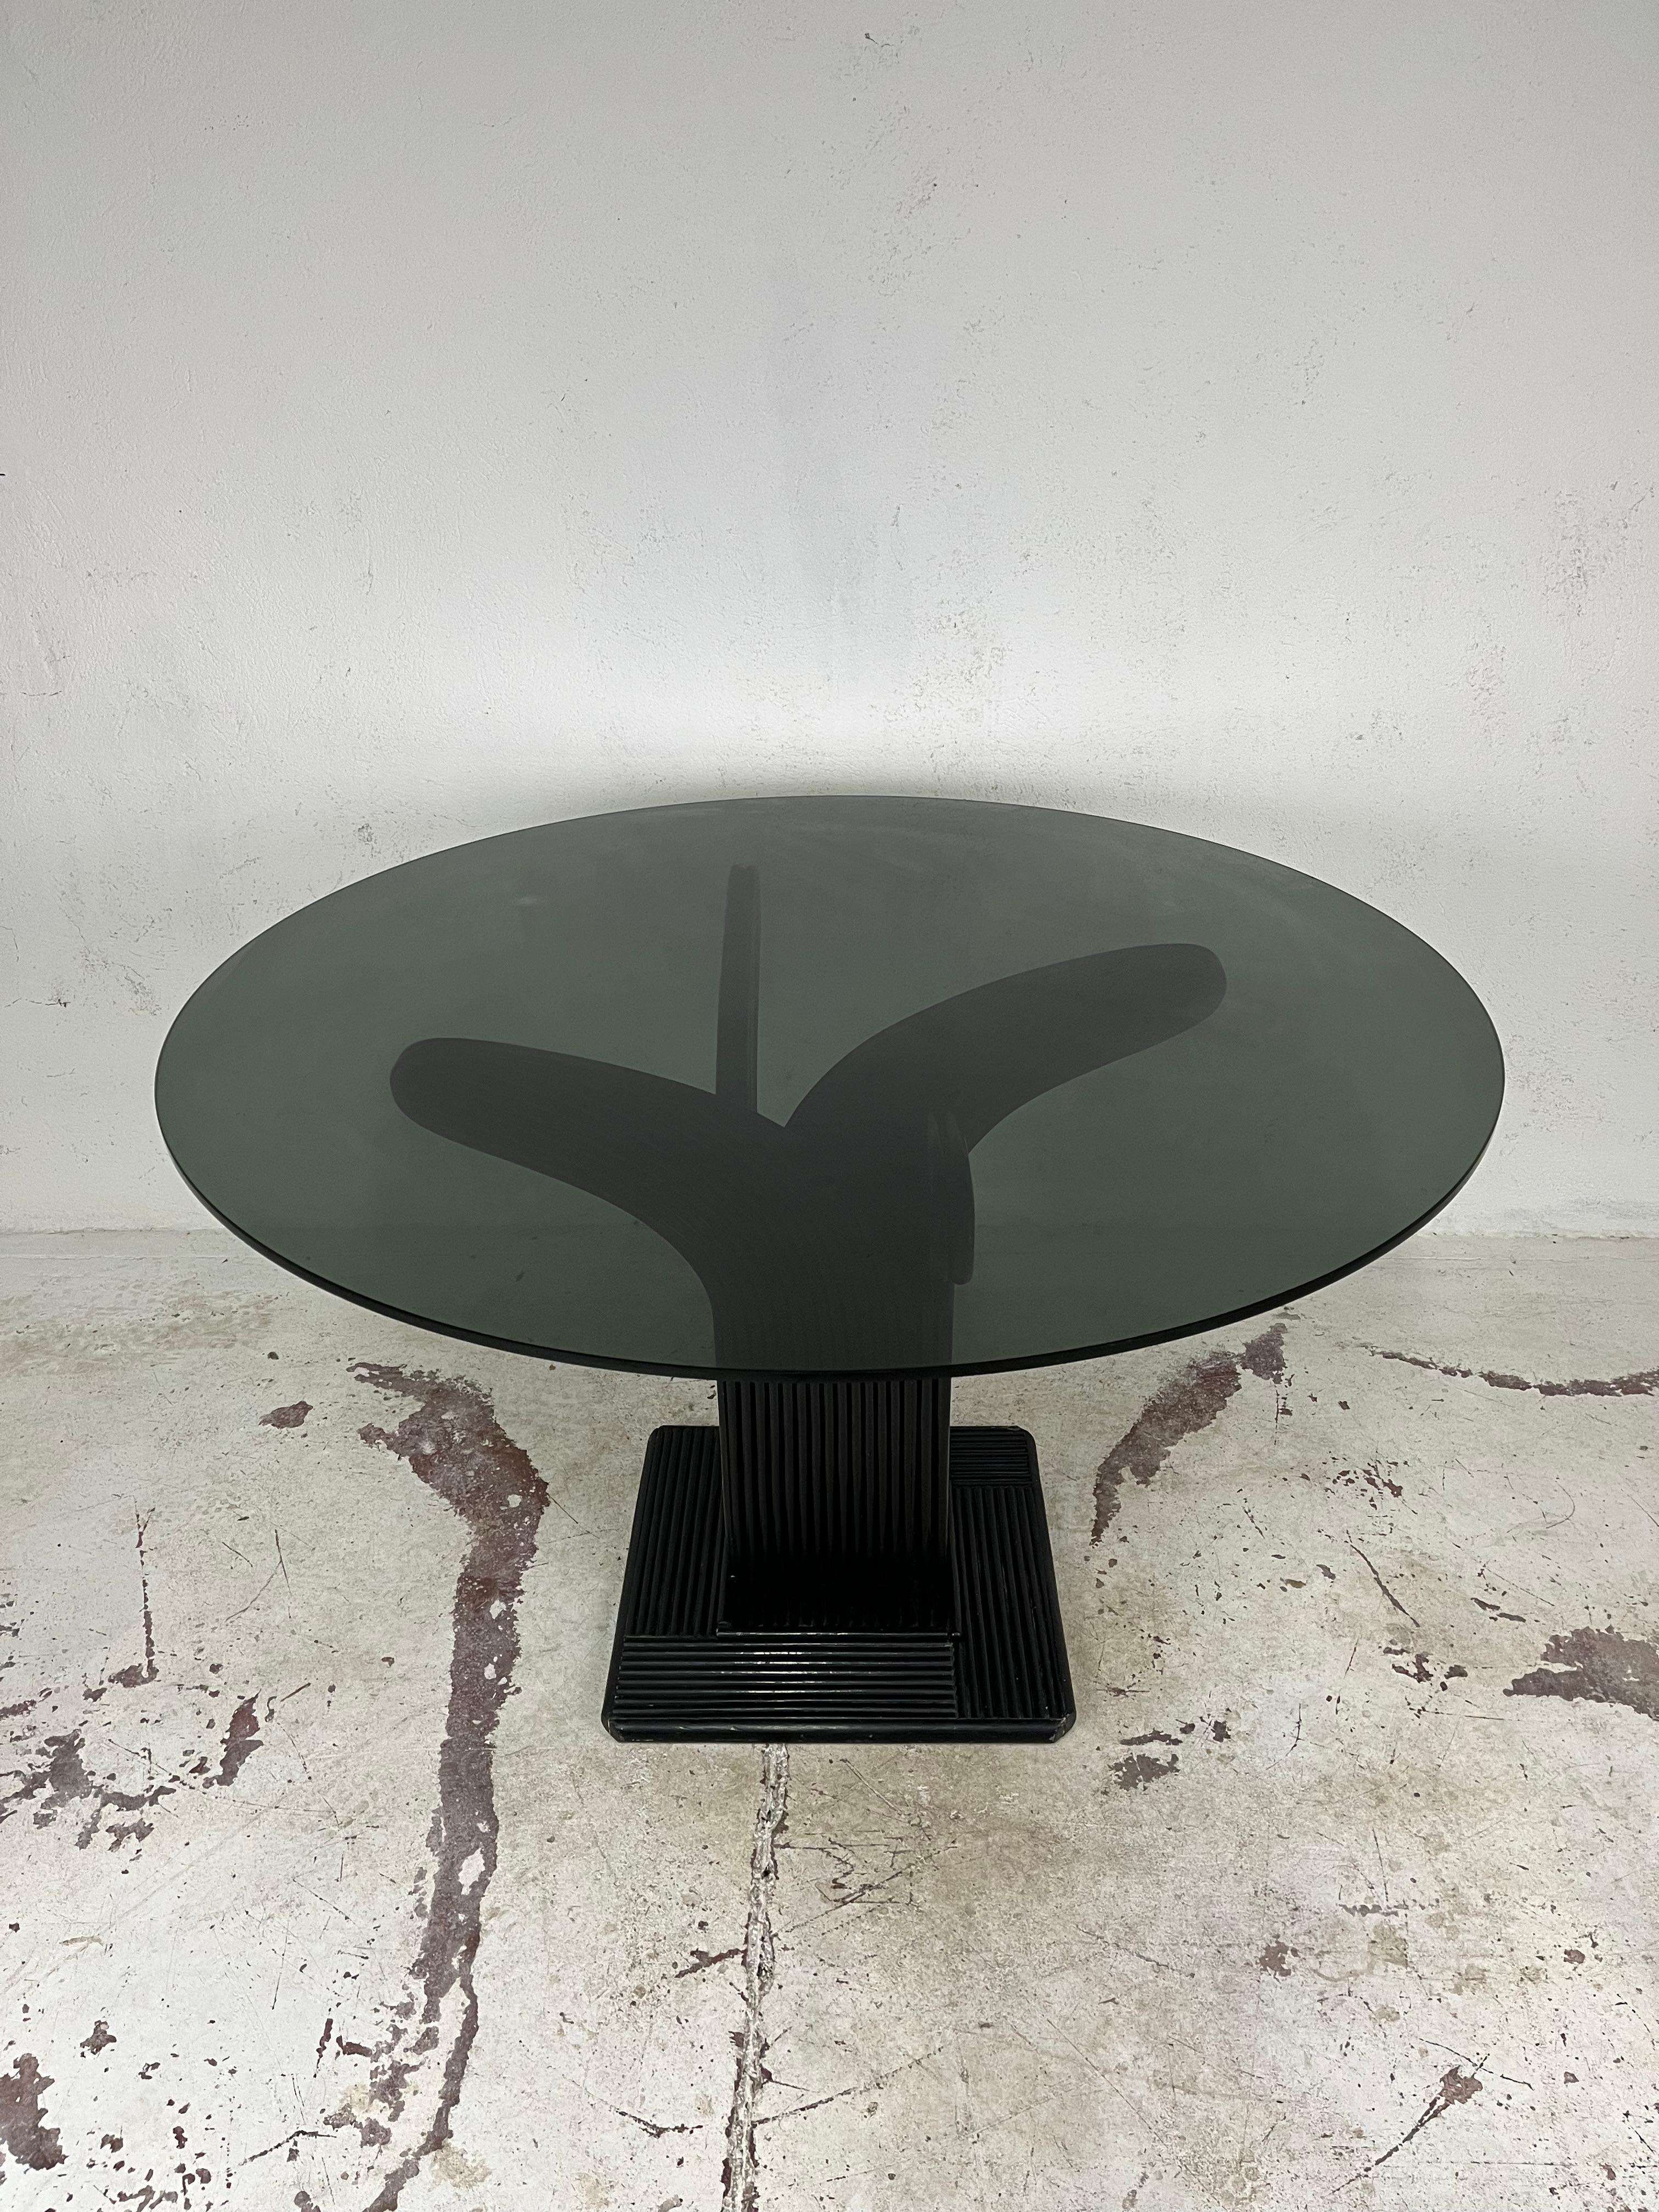 Magnifique table avec un cadre en bambou et rotin finement travaillé et incurvé et un plateau en verre fumé, conçue par Maurizio Mariani et Giusto Purini pour Vivai del Sud dans les années 1970.

La table a été soigneusement nettoyée et est en